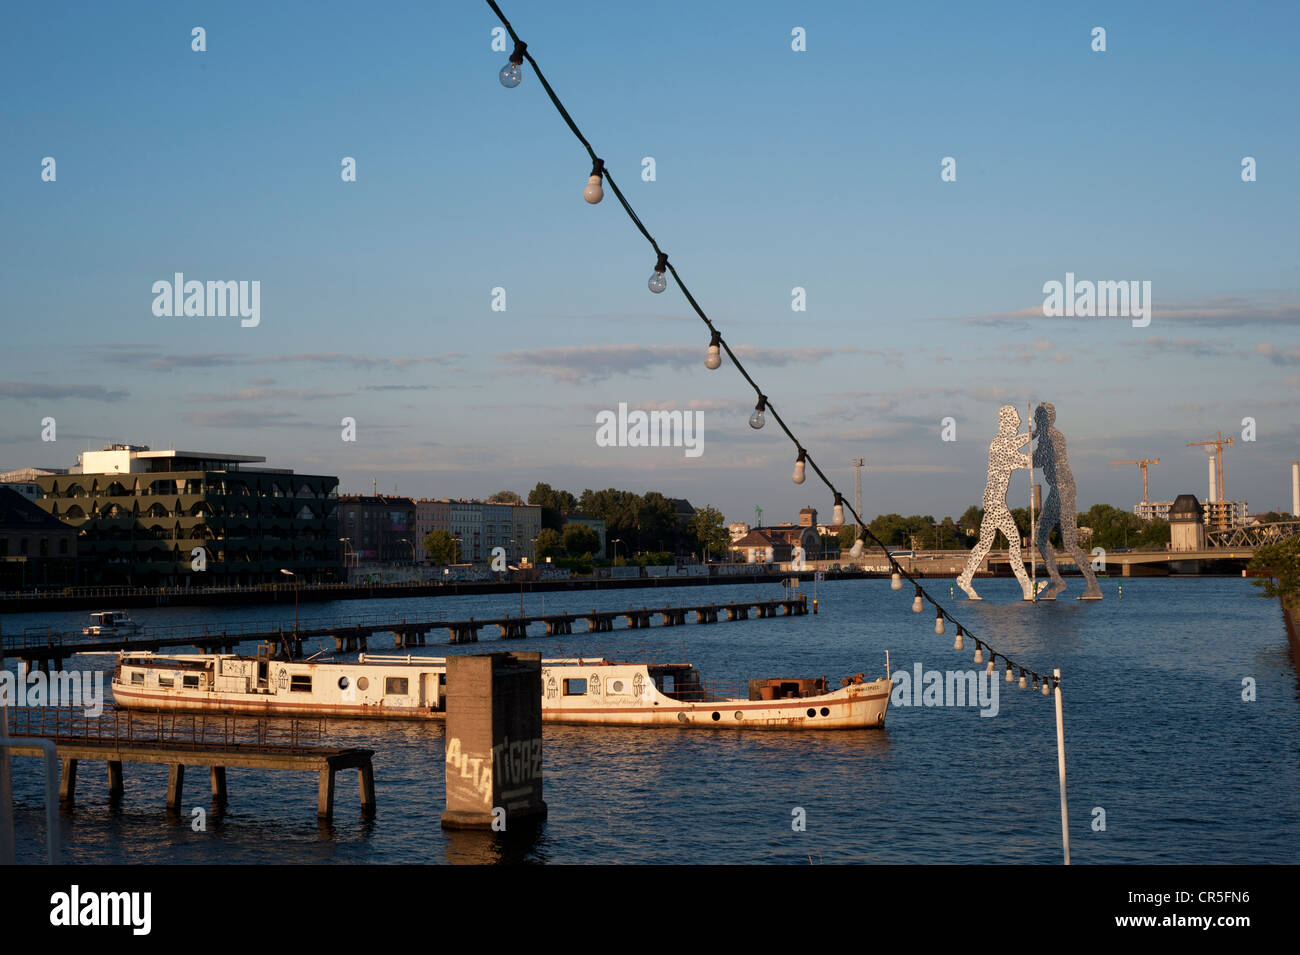 La sculpture Molecul homme par Jonathan Borofsky et un bateau dans la rivière Spree, Berlin Banque D'Images